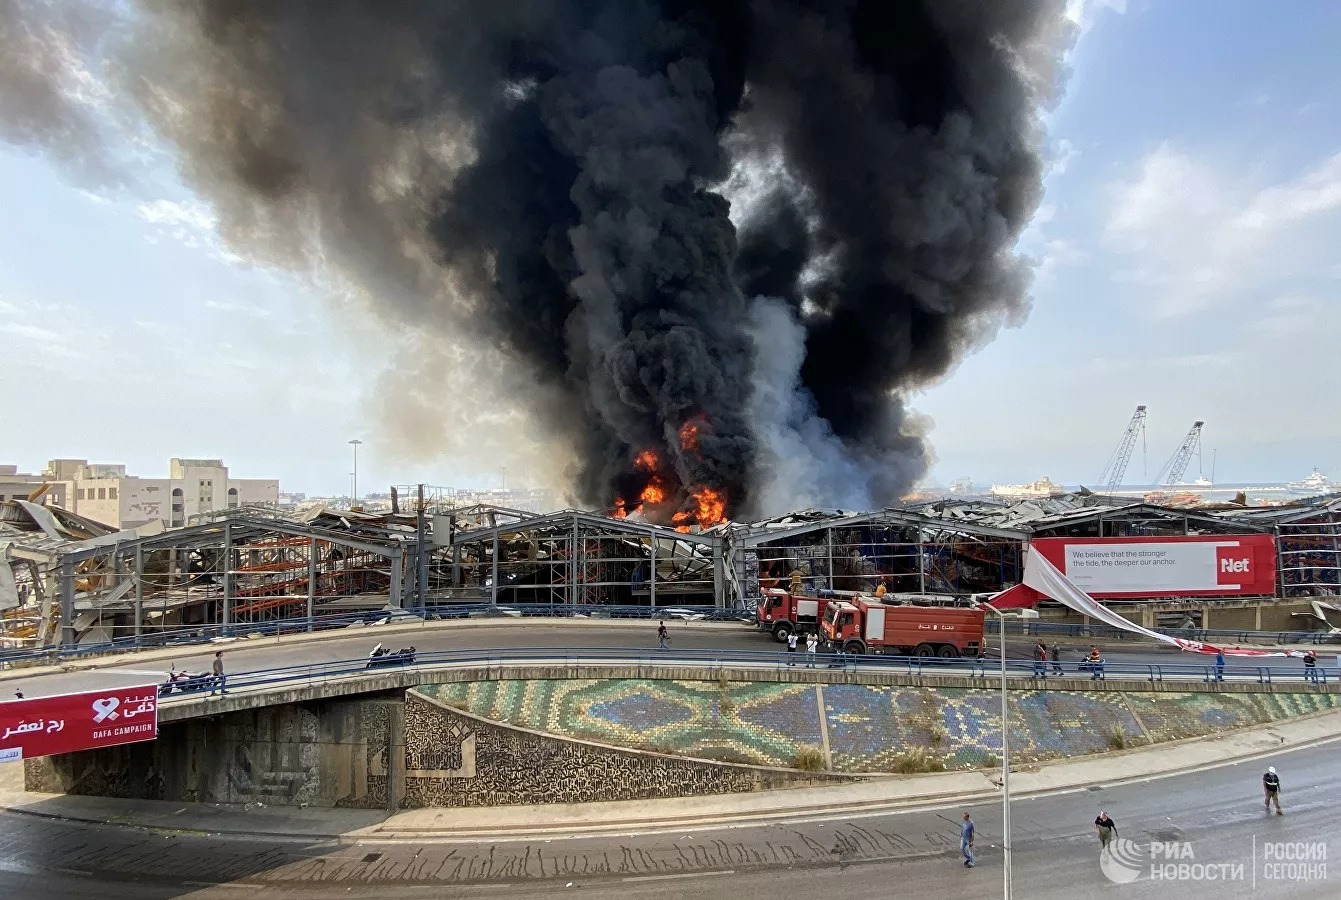 Hé lộ nguyên nhân bùng phát đám cháy ở cảng Beirut - Ảnh 6.